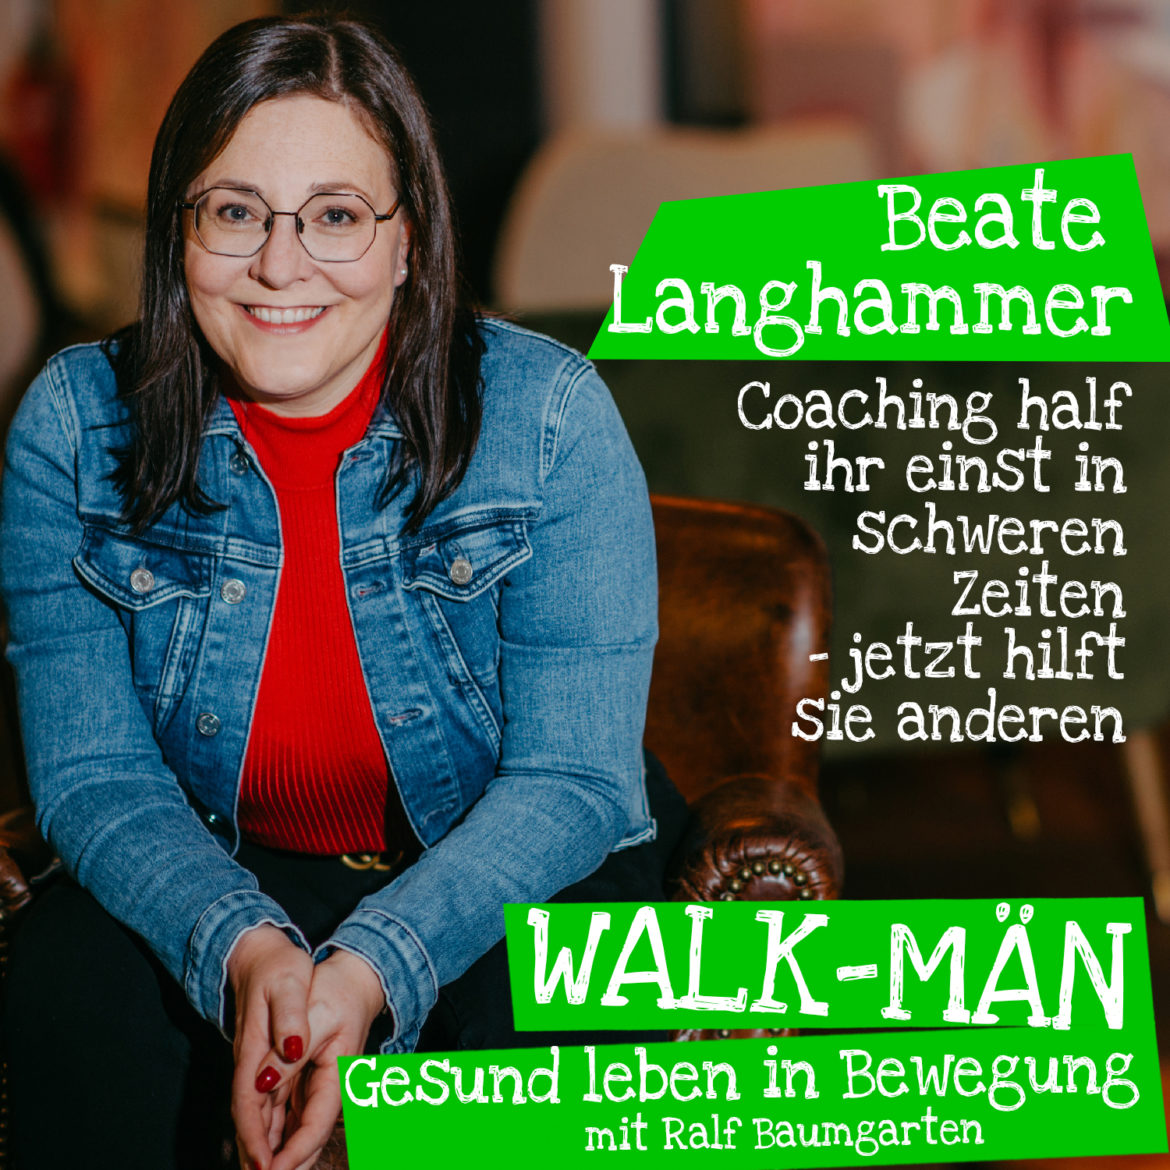 95. Walk-Män-Podcast: Beate Langhammer – mit Coaching anderen helfen